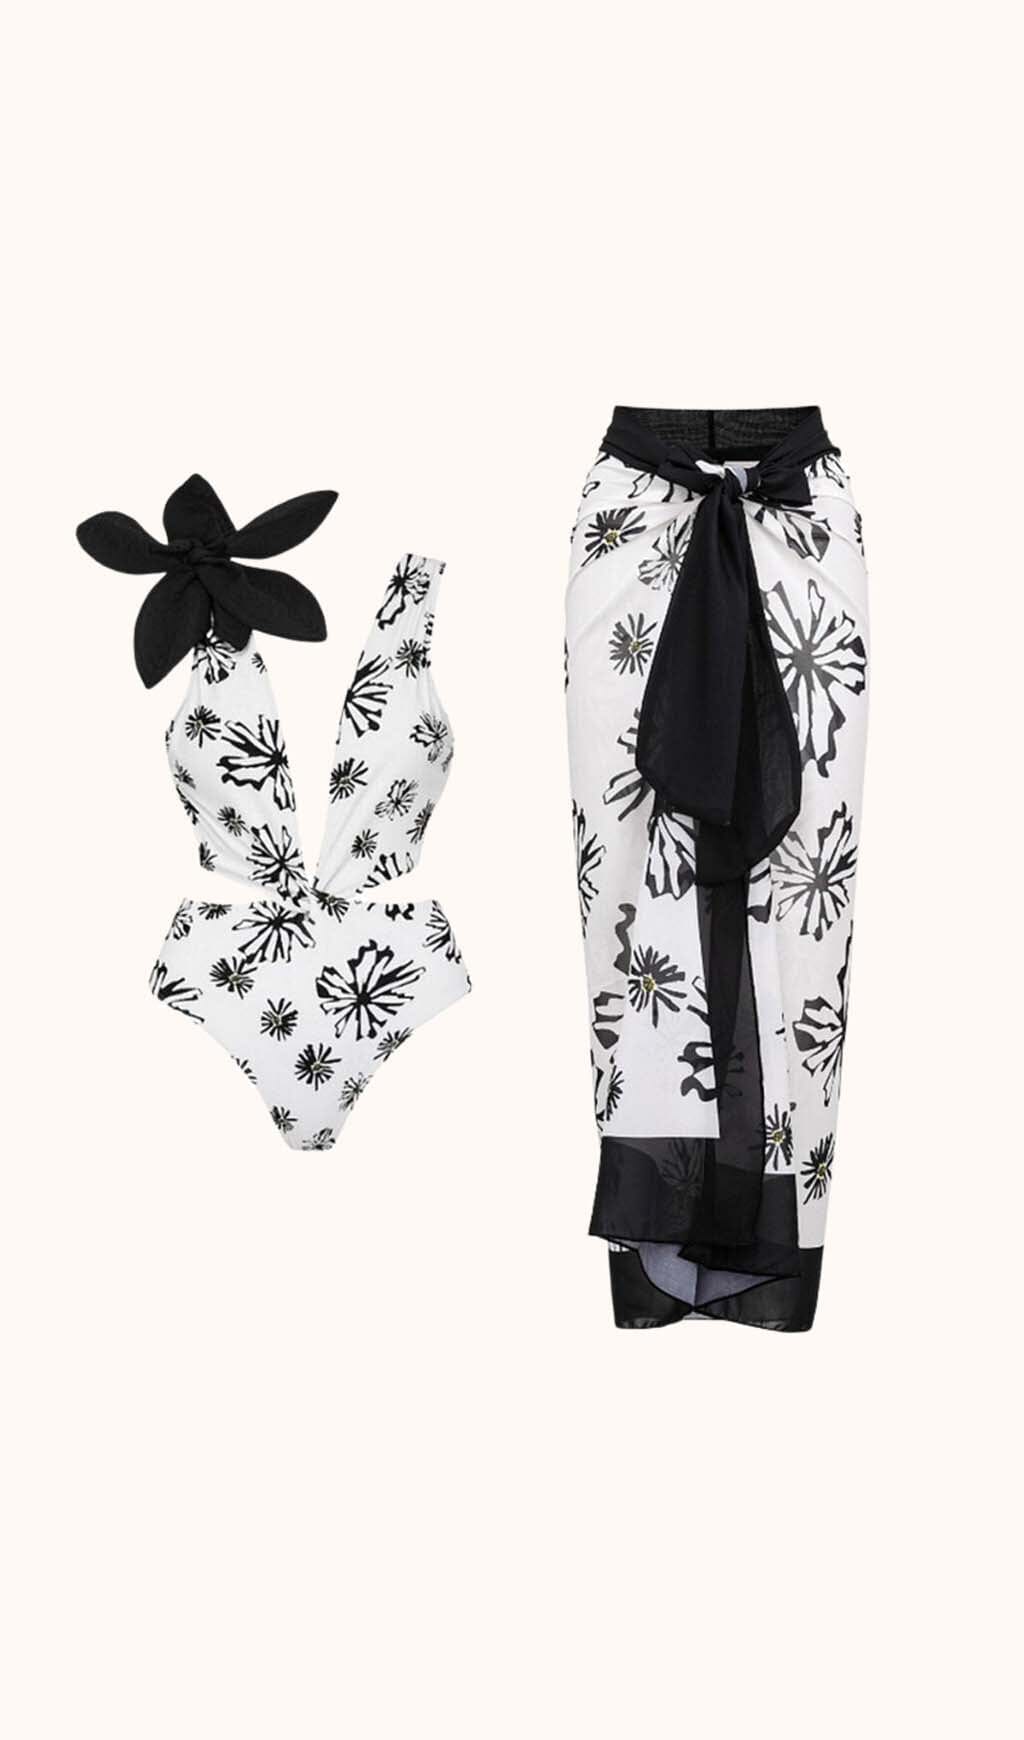 Aurea Flower Cutout Swimwear Two Piece Set